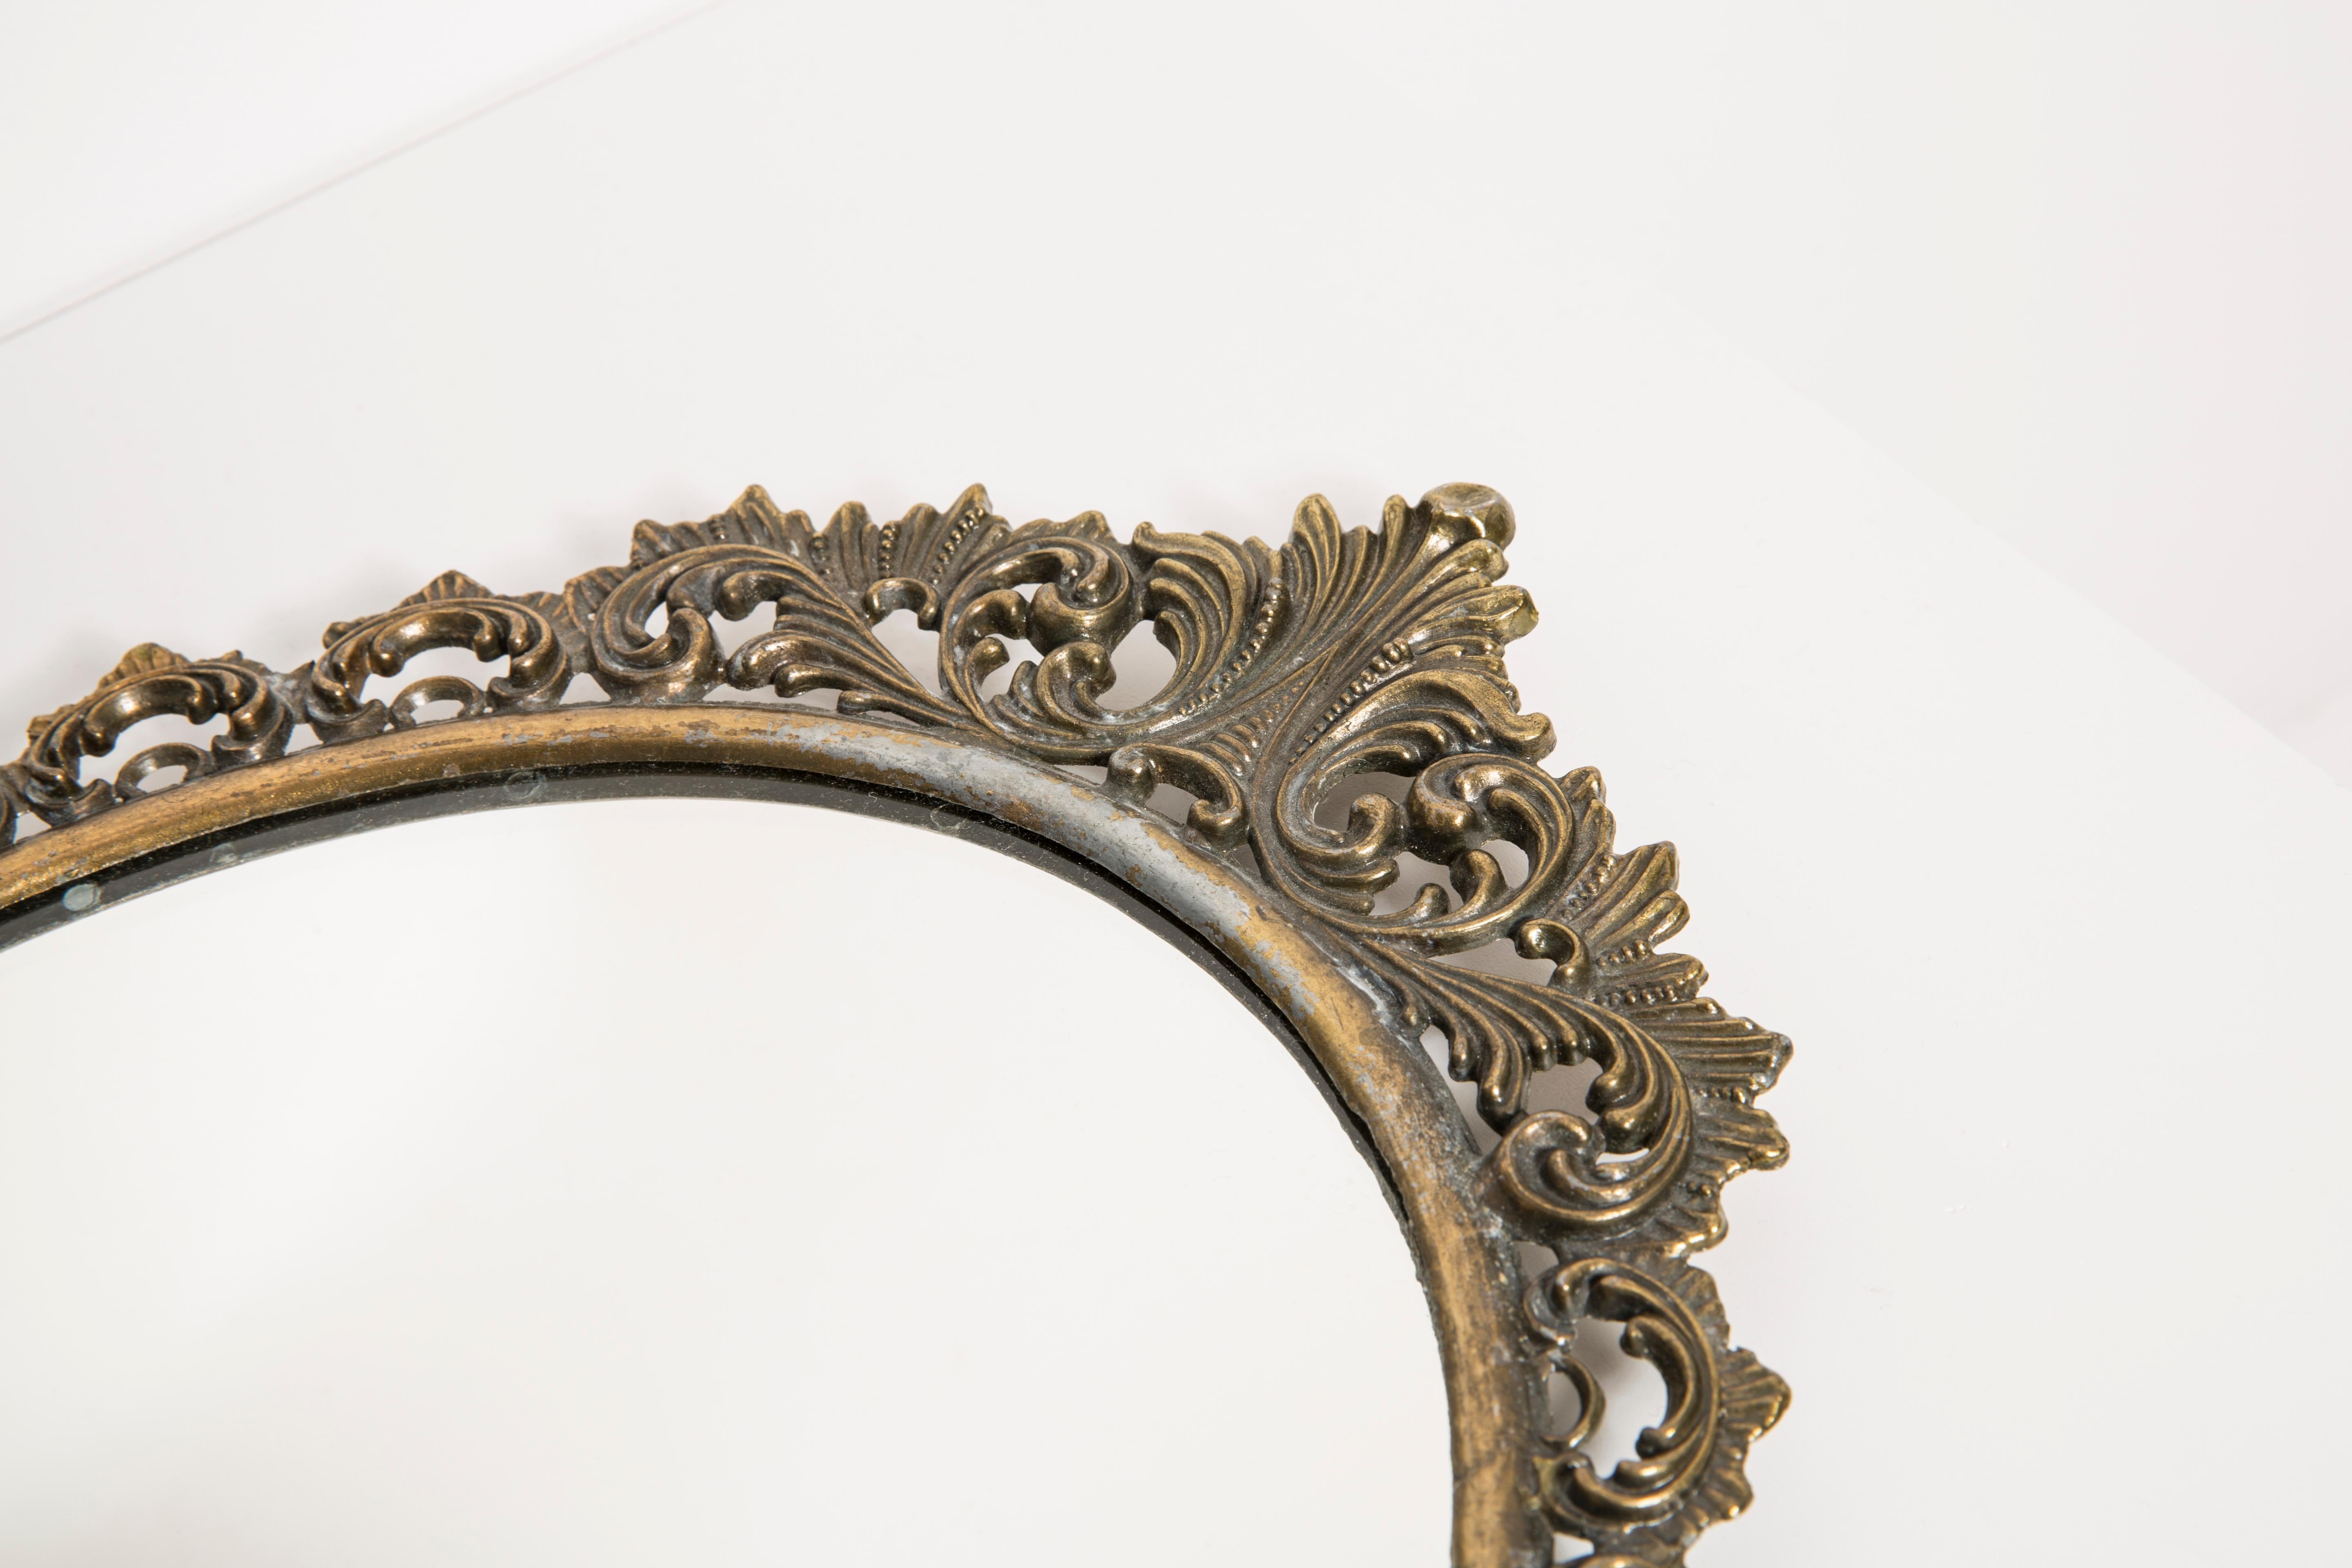 mid century gold mirror